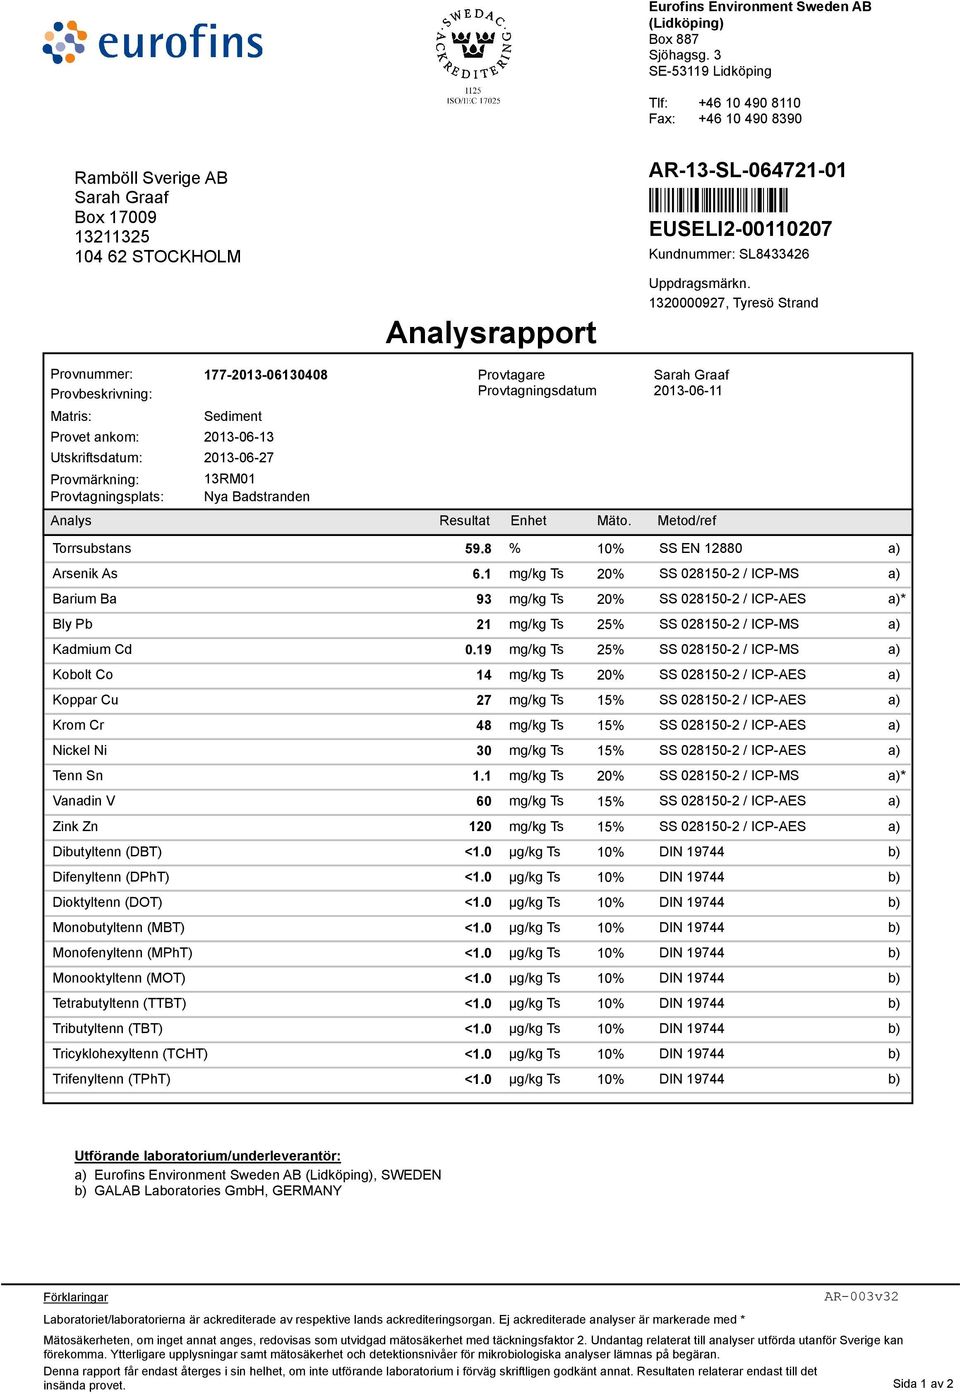 Nya Badstranden Analysrapport Provtagare Provtagningsdatum Uppdragsmärkn. 1320000927, Tyresö Strand 2013-06-11 Analys Resultat Enhet Mäto. Metod/ref Torrsubstans 59.8 % 10% SS EN 12880 Arsenik As 6.